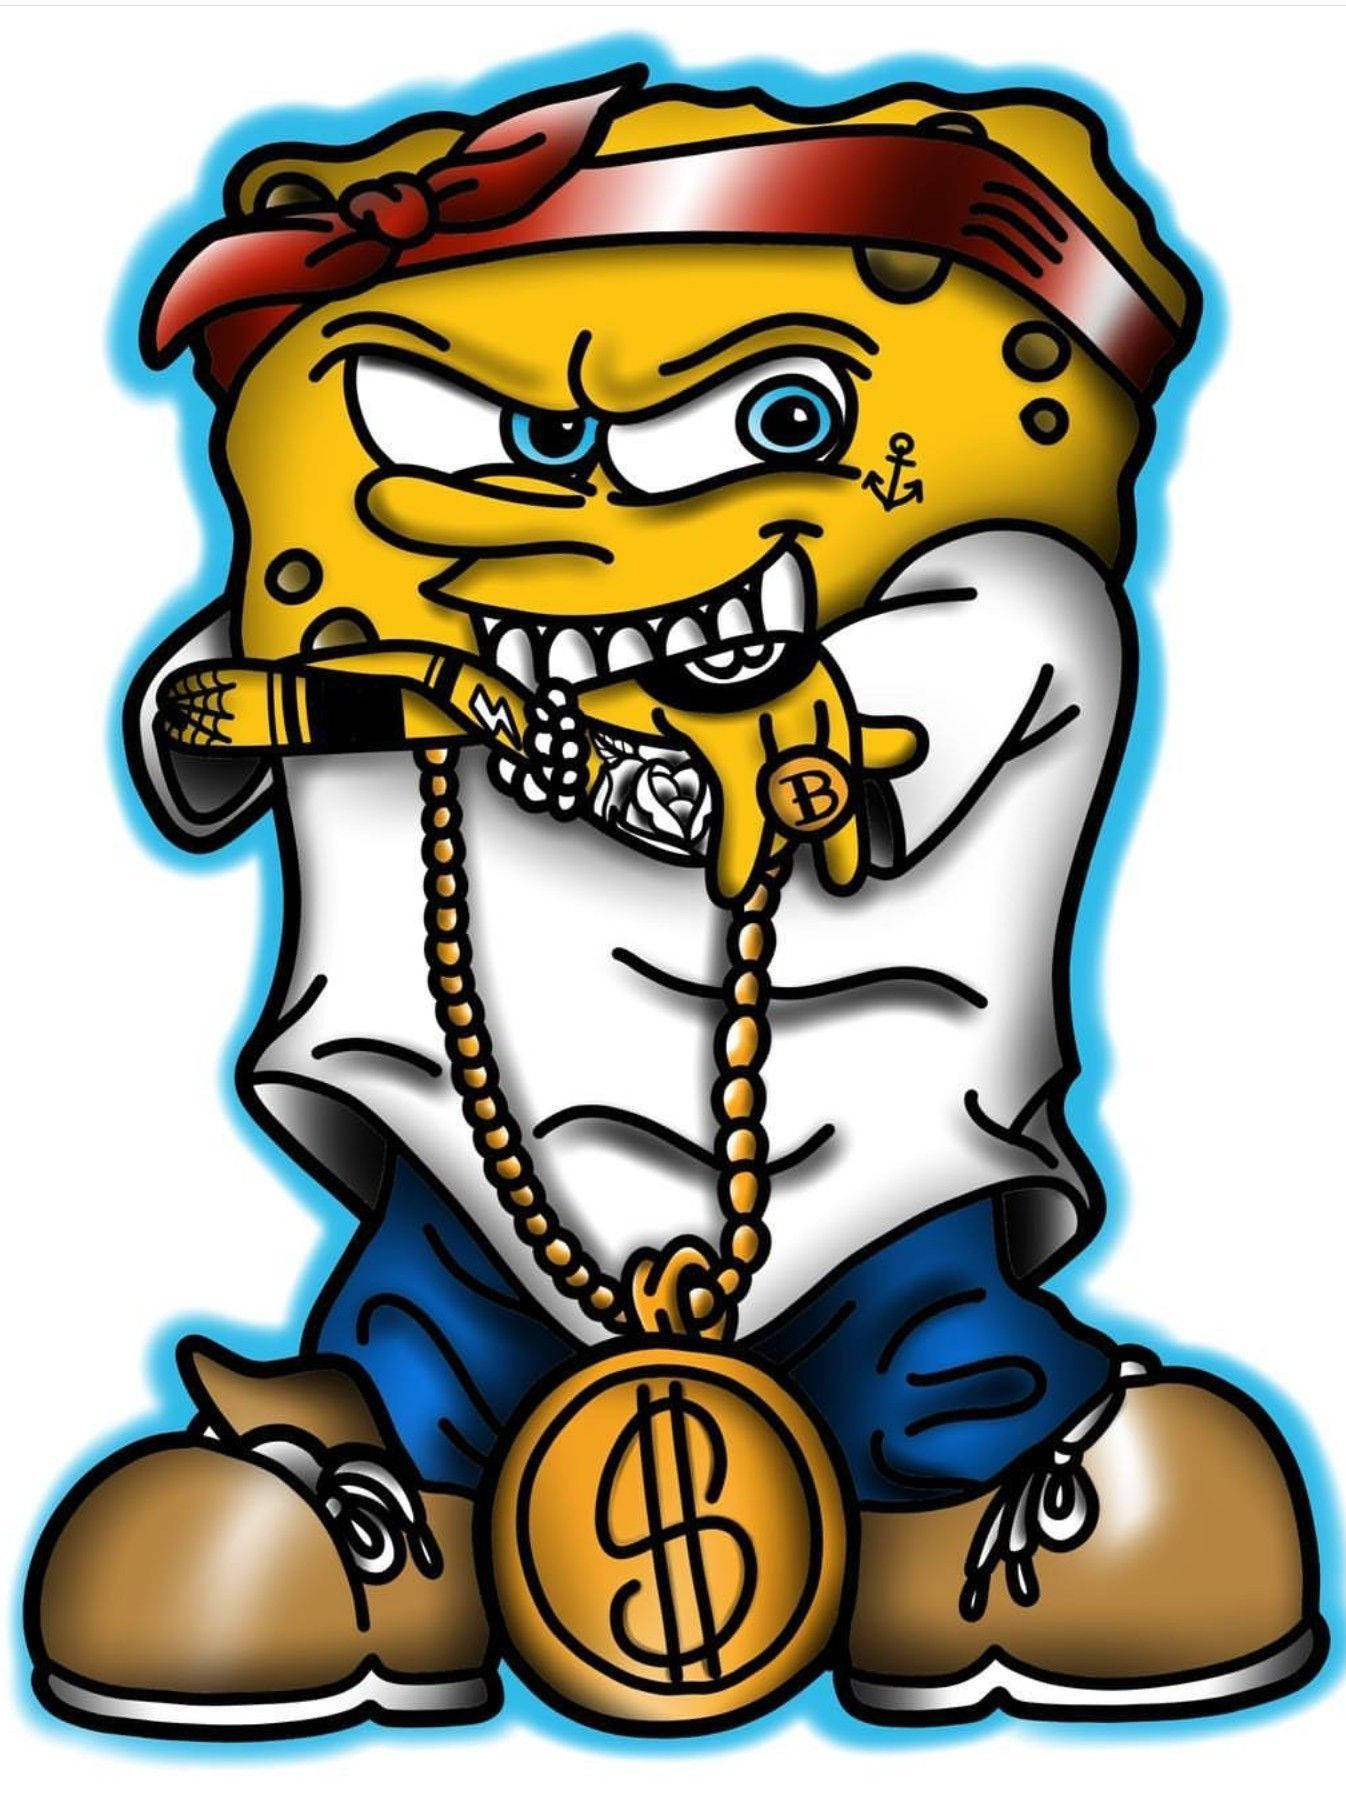 [100+] Gangster Spongebob Wallpapers | Wallpapers.com